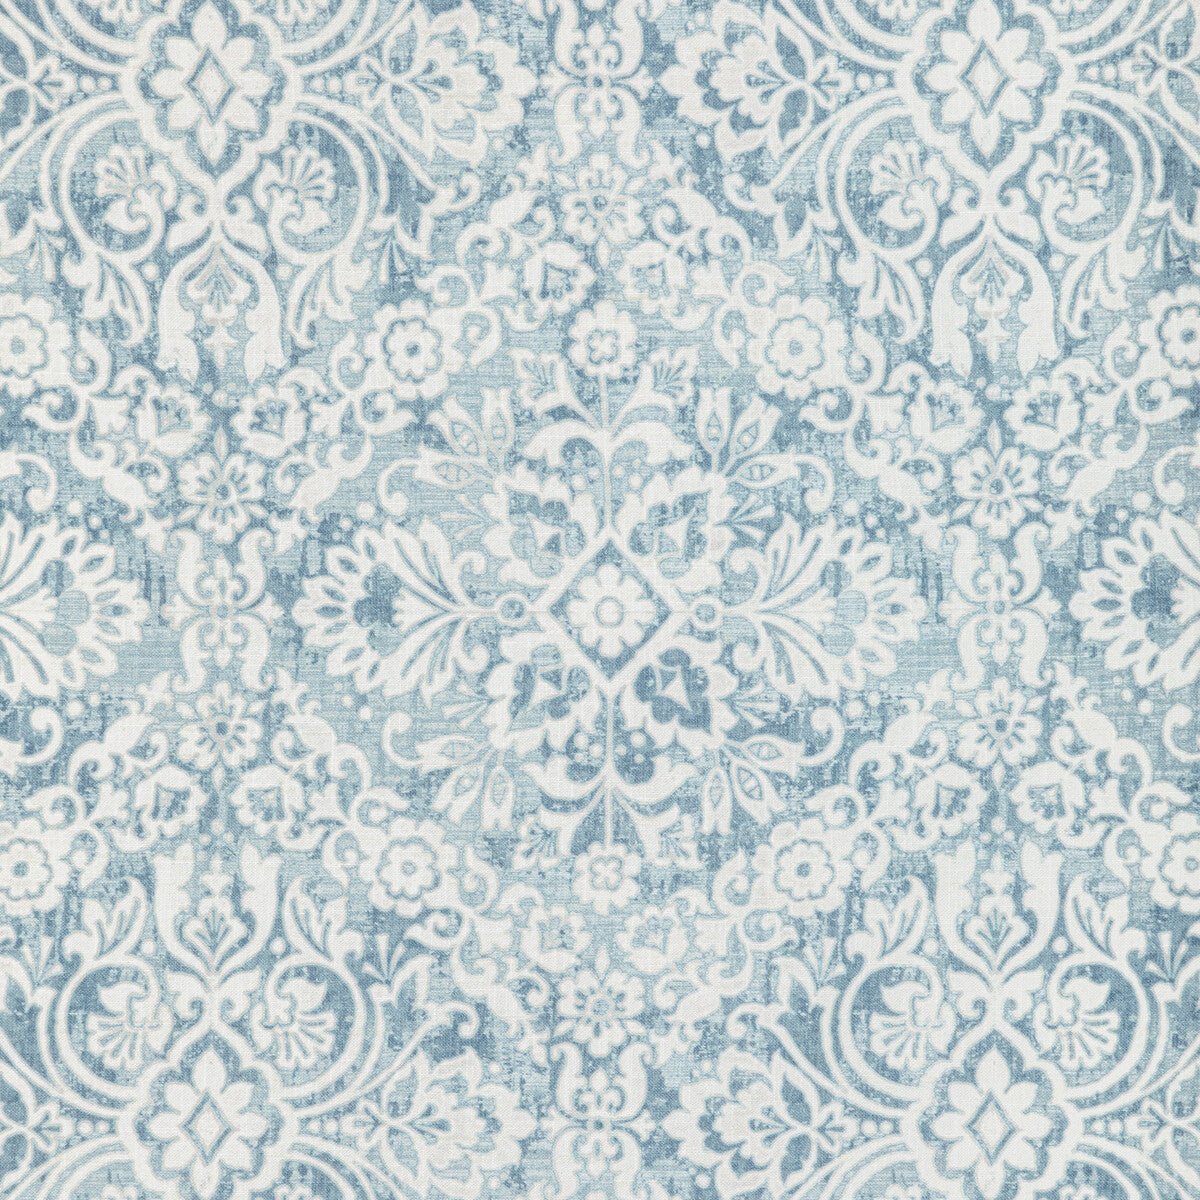 Kravet Basics fabric in venedius-15 color - pattern VENEDIUS.15.0 - by Kravet Basics